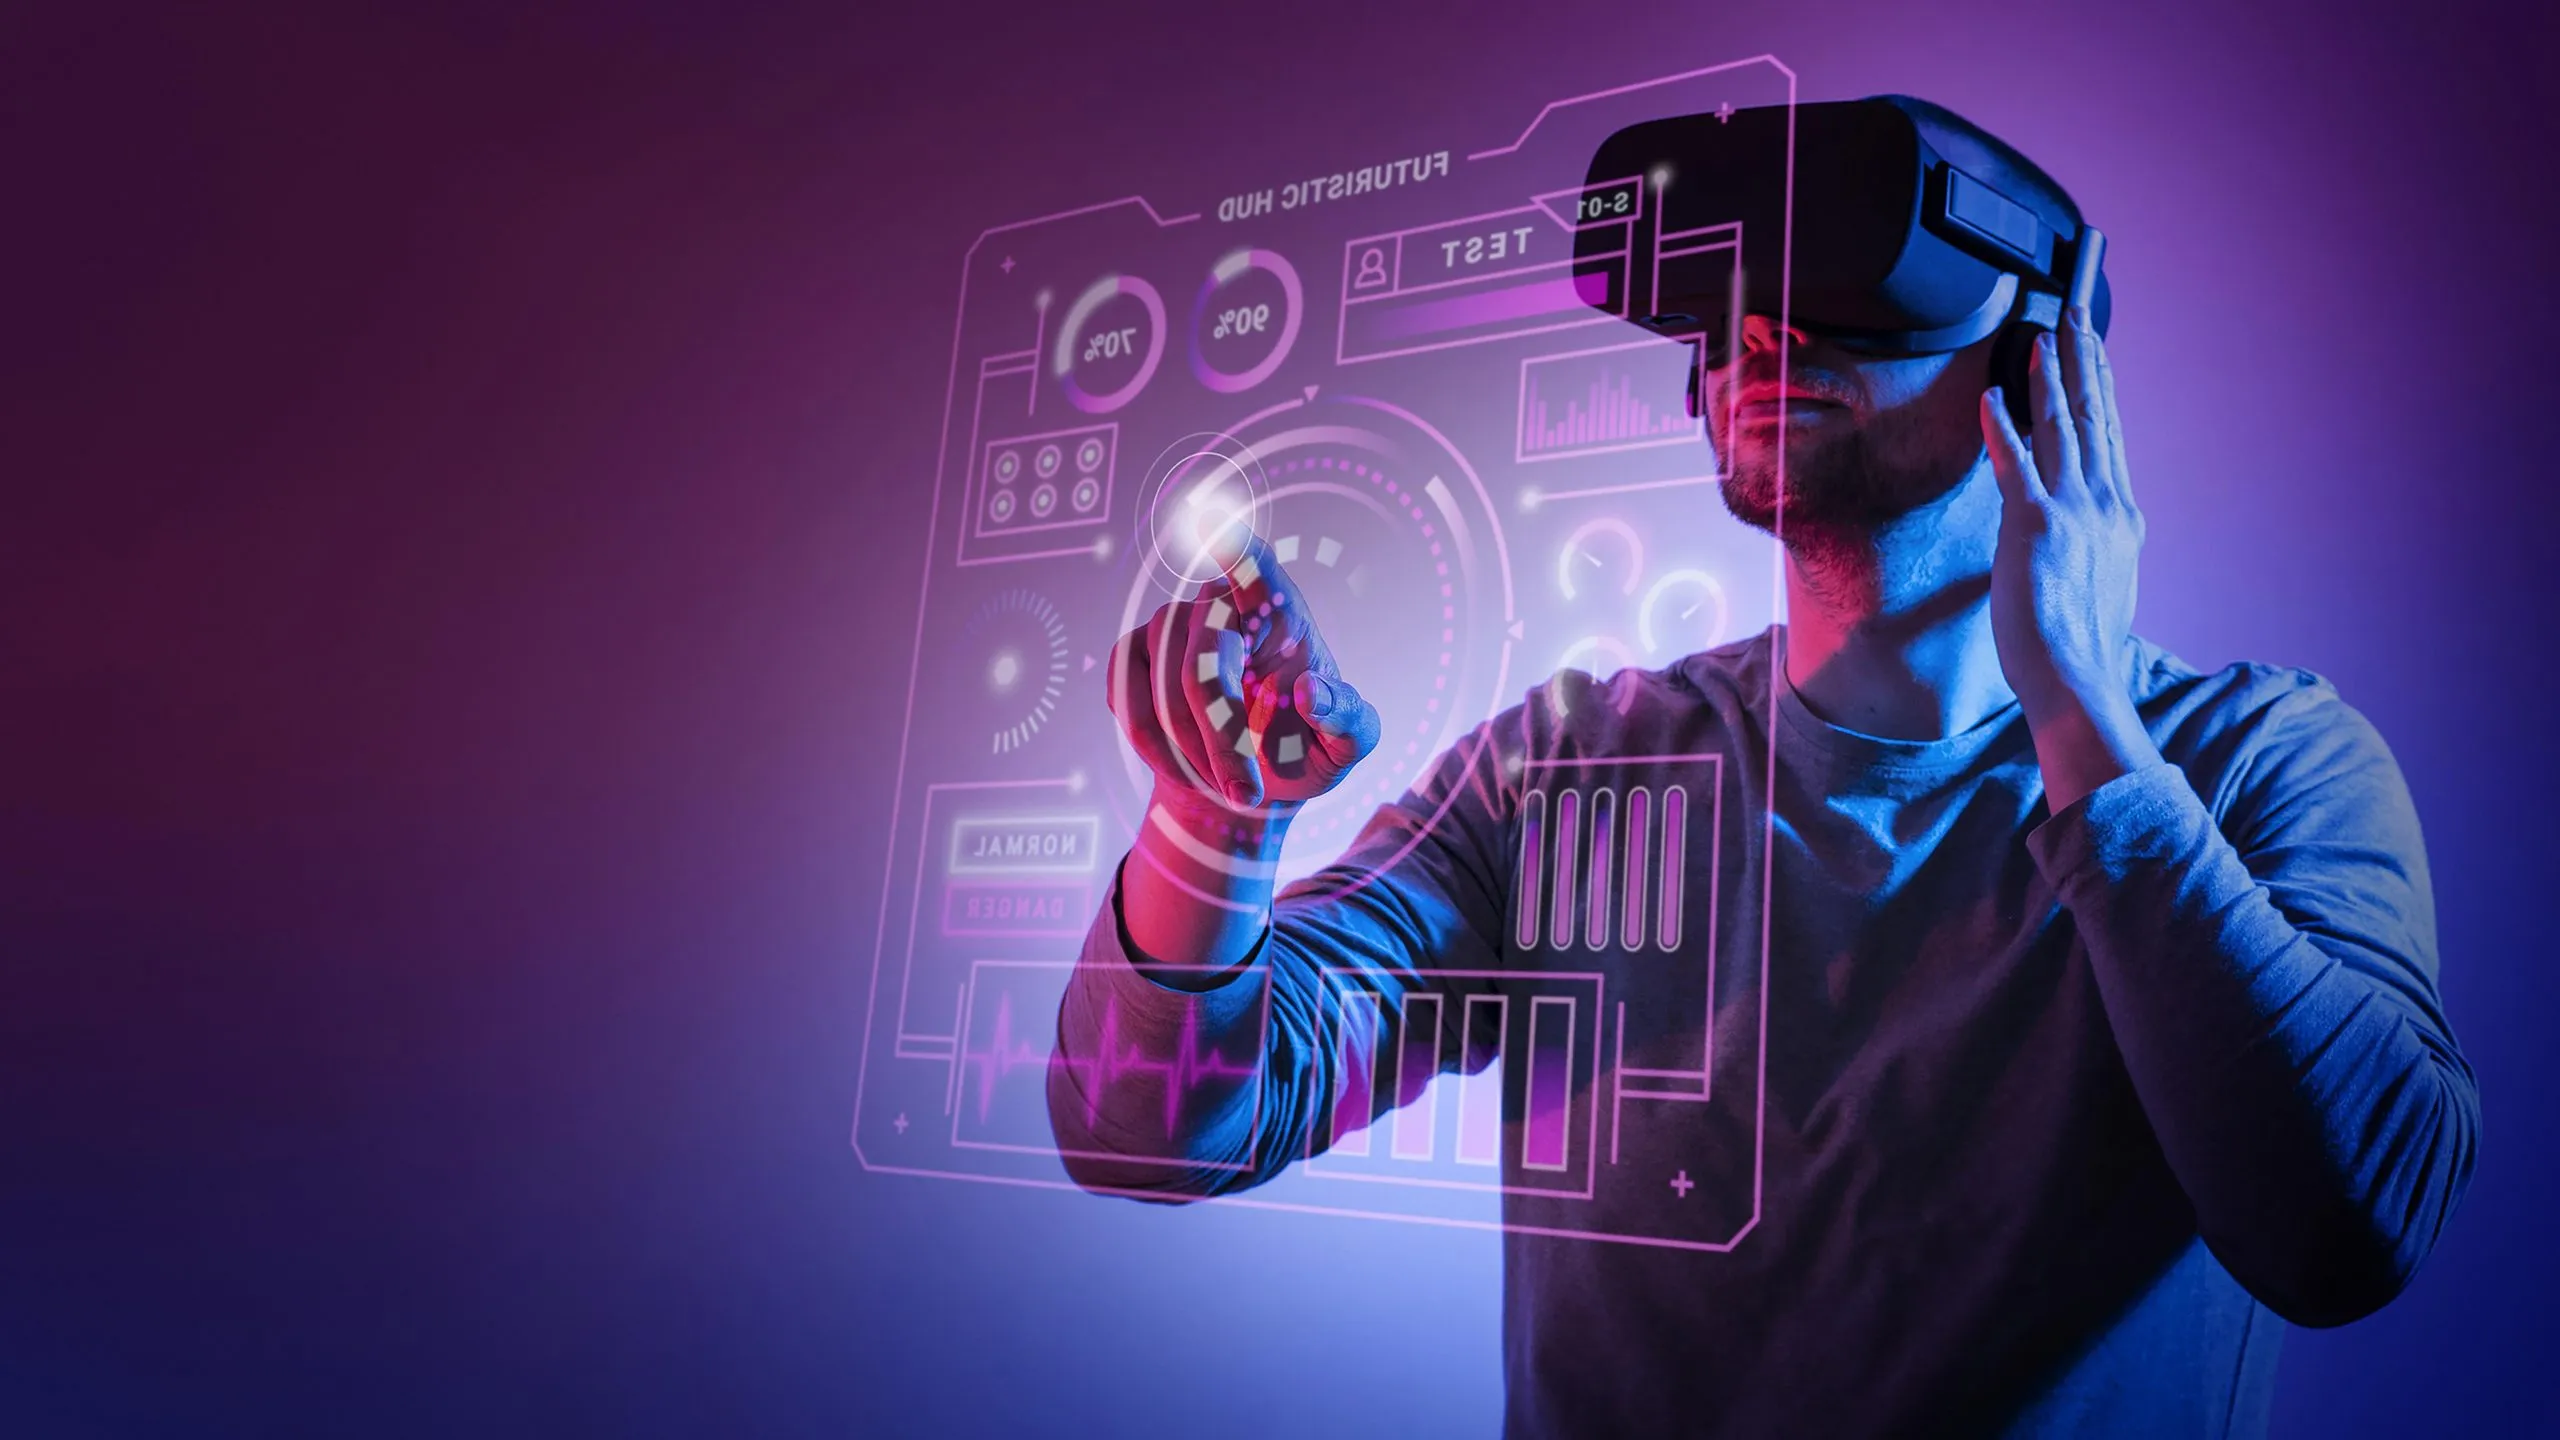 图片展示一位男士戴着虚拟现实头盔，正用手指触碰前方虚拟的透明触控界面，背景为紫色调。